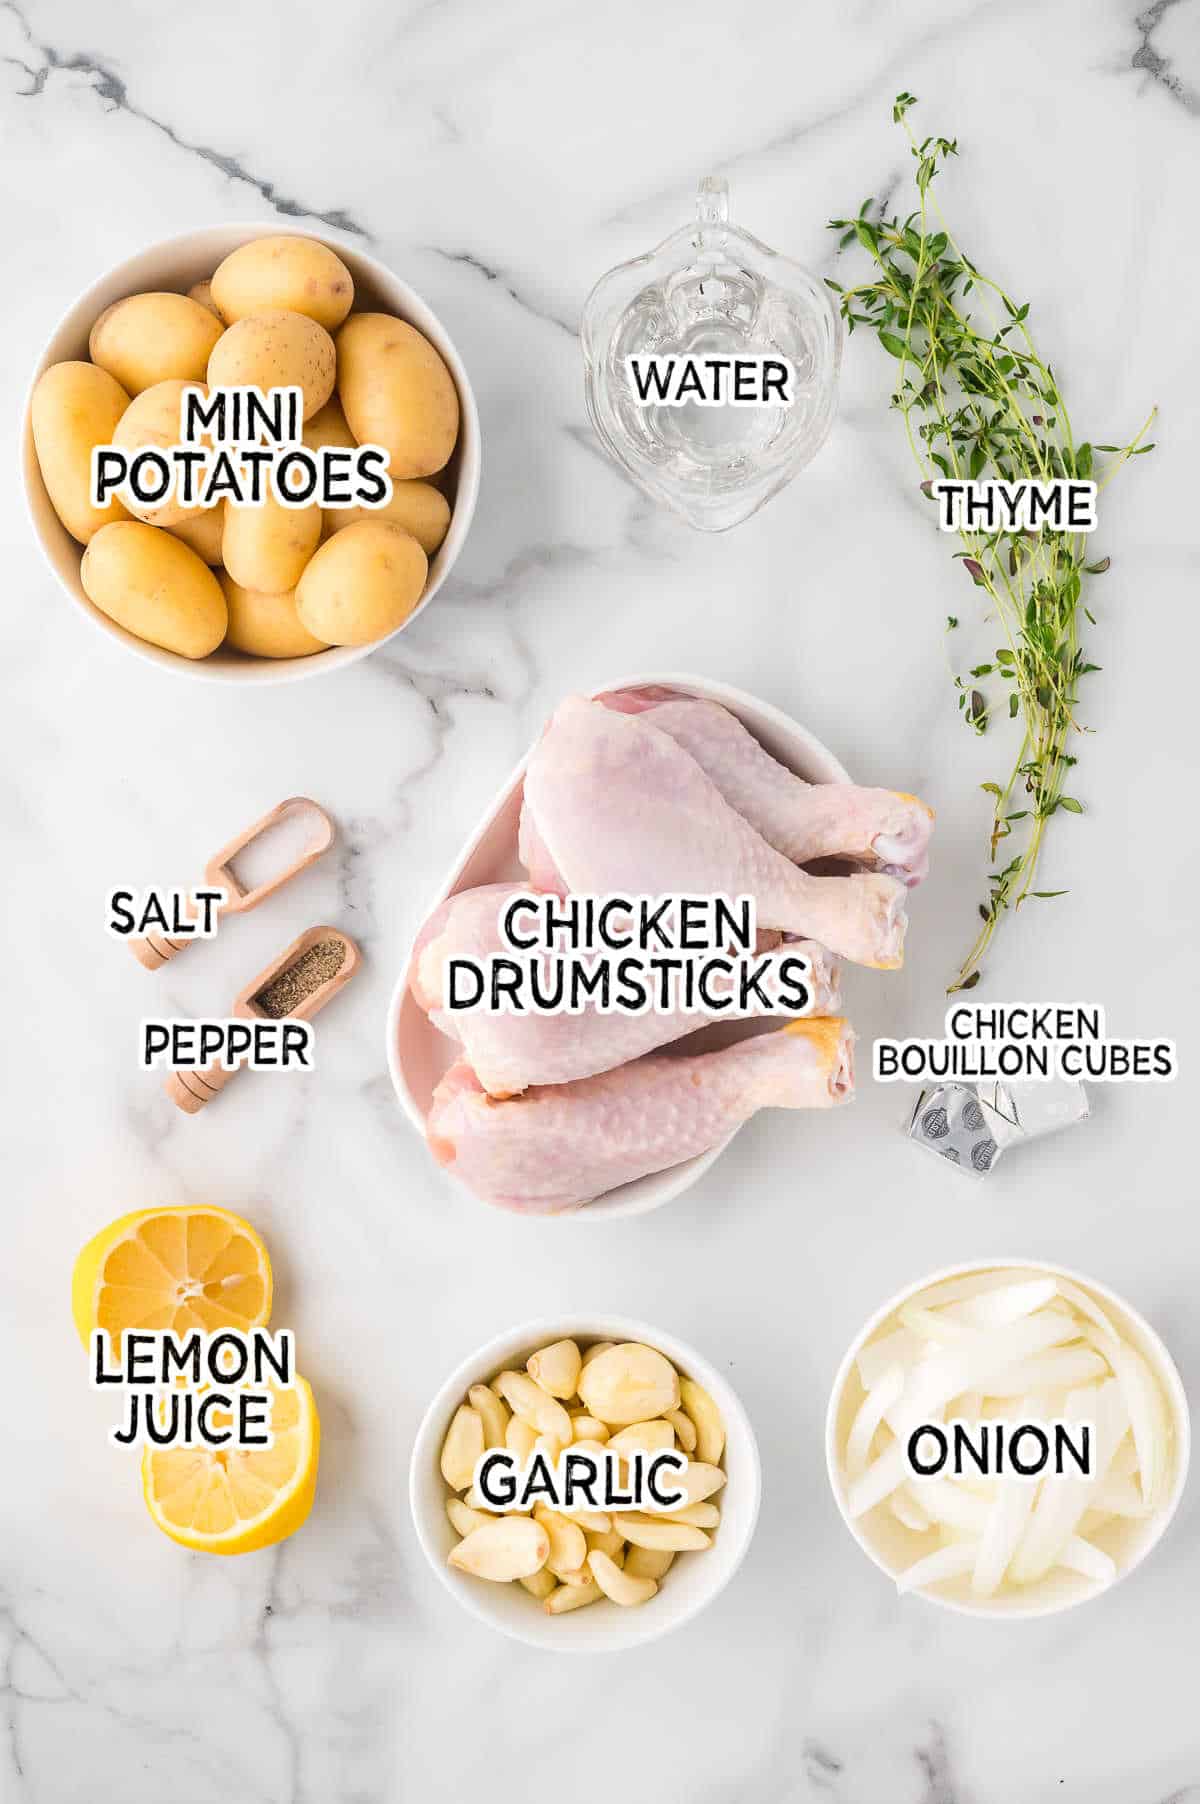 Ingredients to make slow cooker 40 clove garlic chicken.